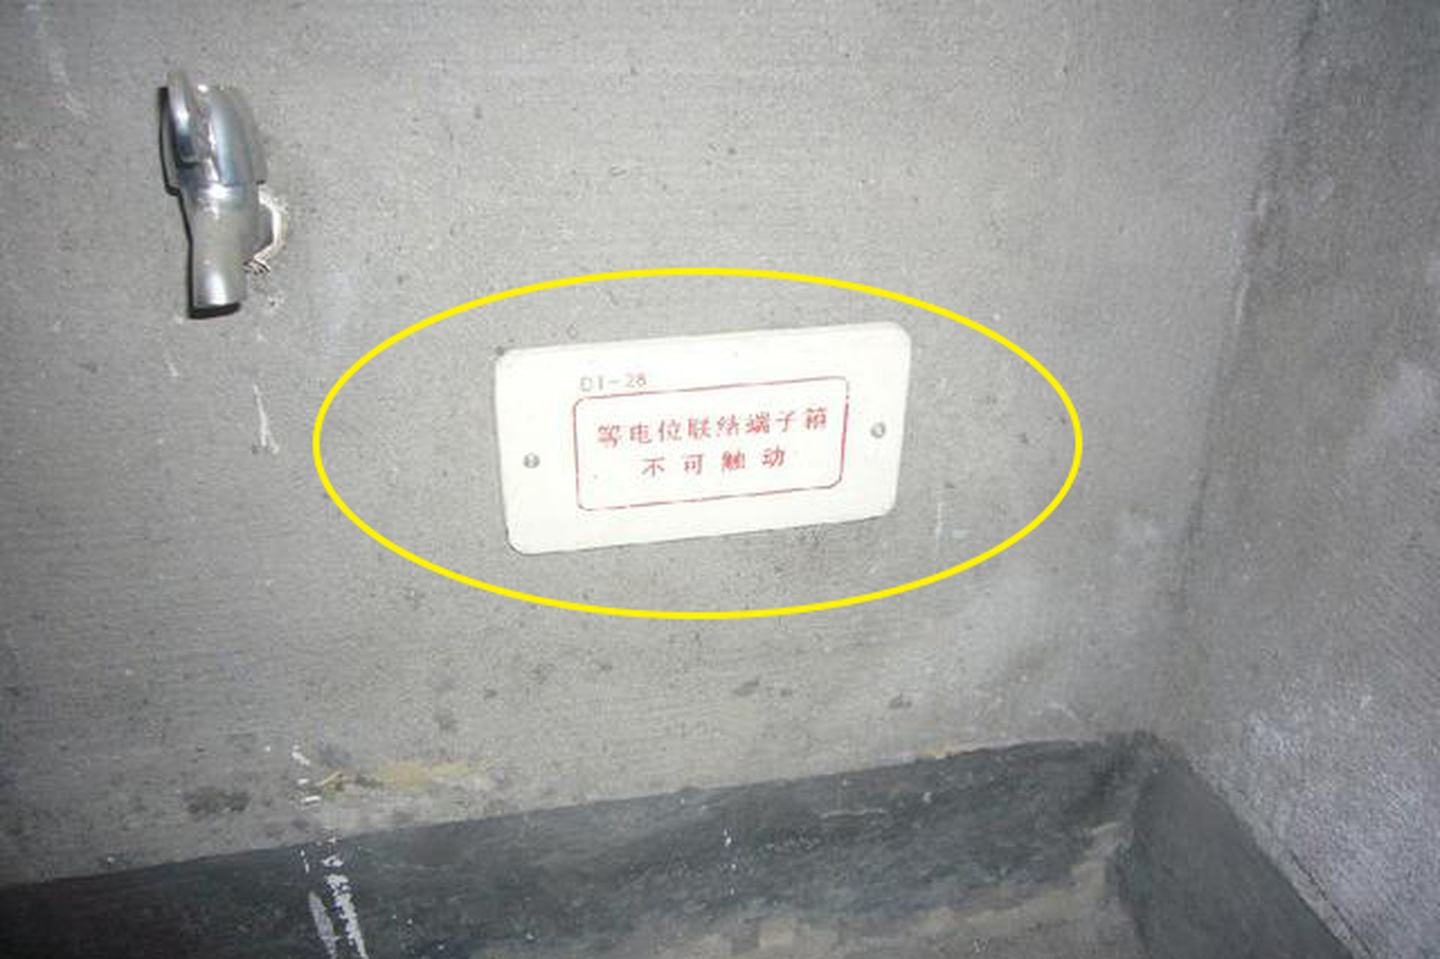 衛生間驗房指南：浴霸不接地，插座未配漏保，諸多安全細節必落實